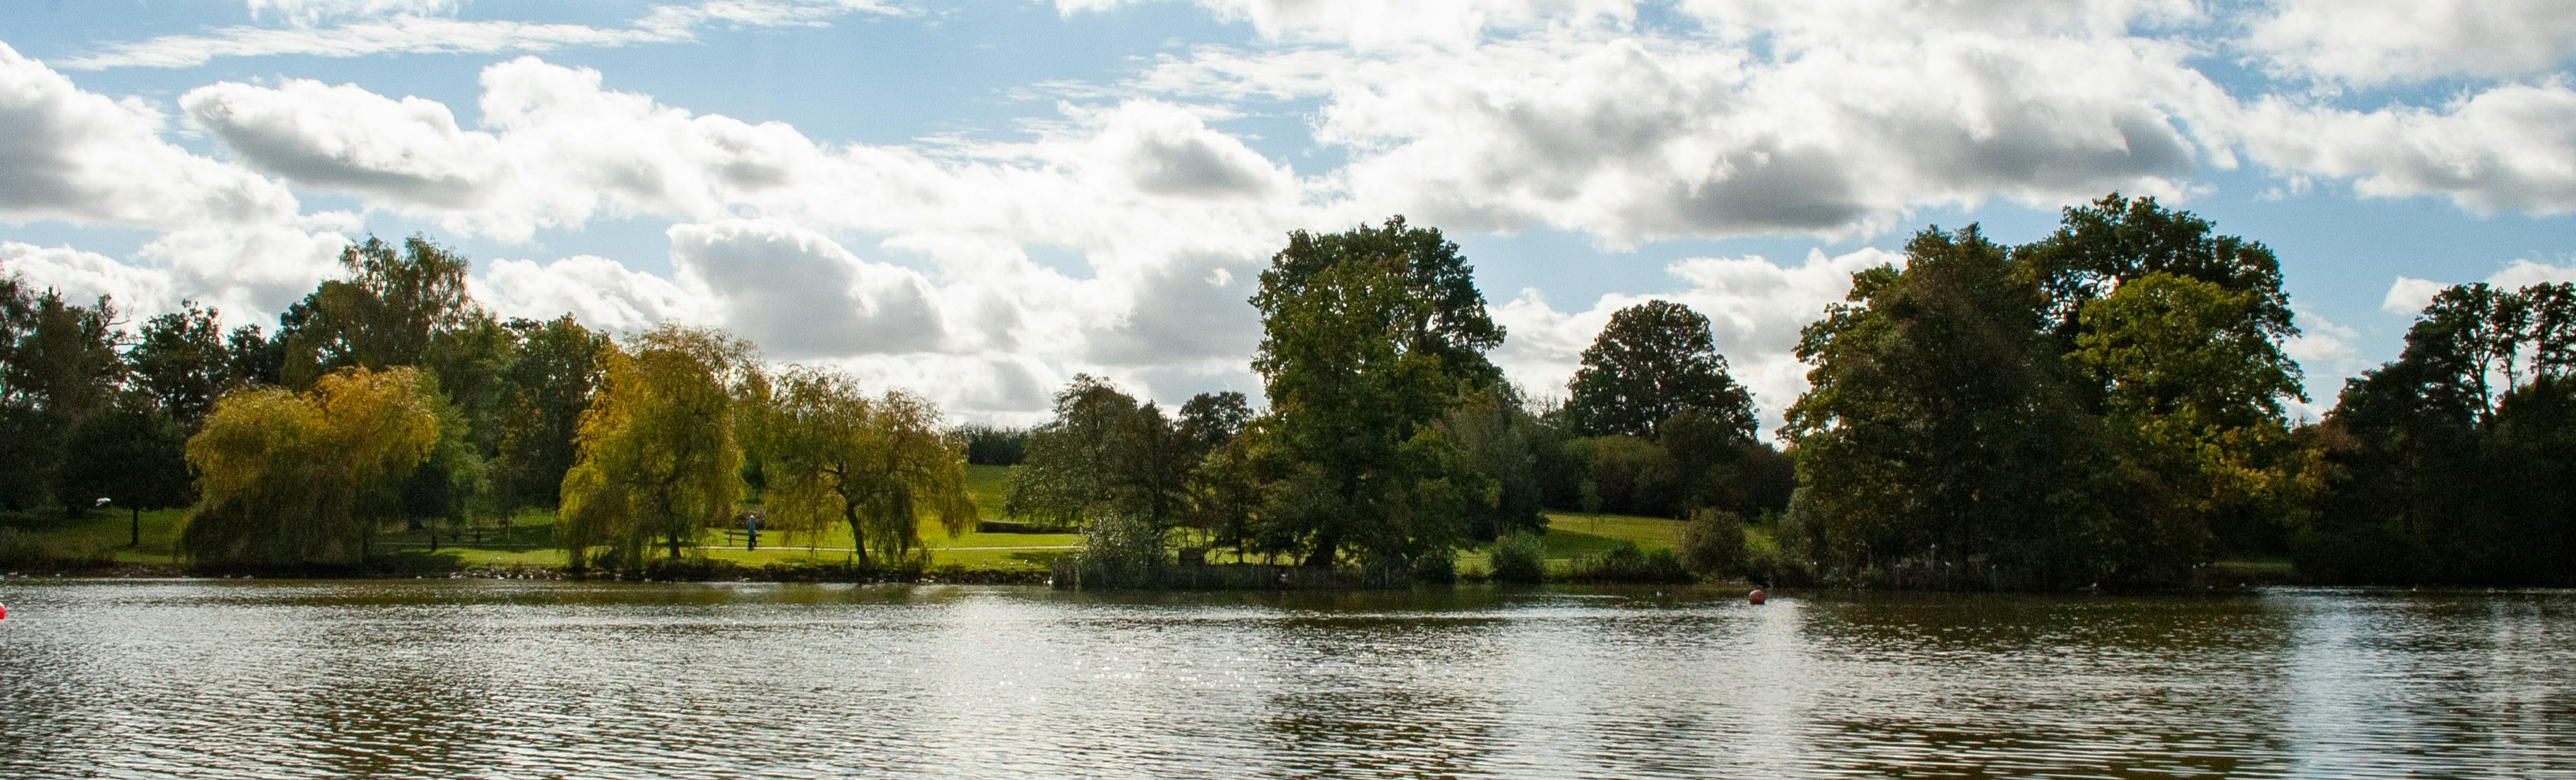 The lake at Dunorlan Park